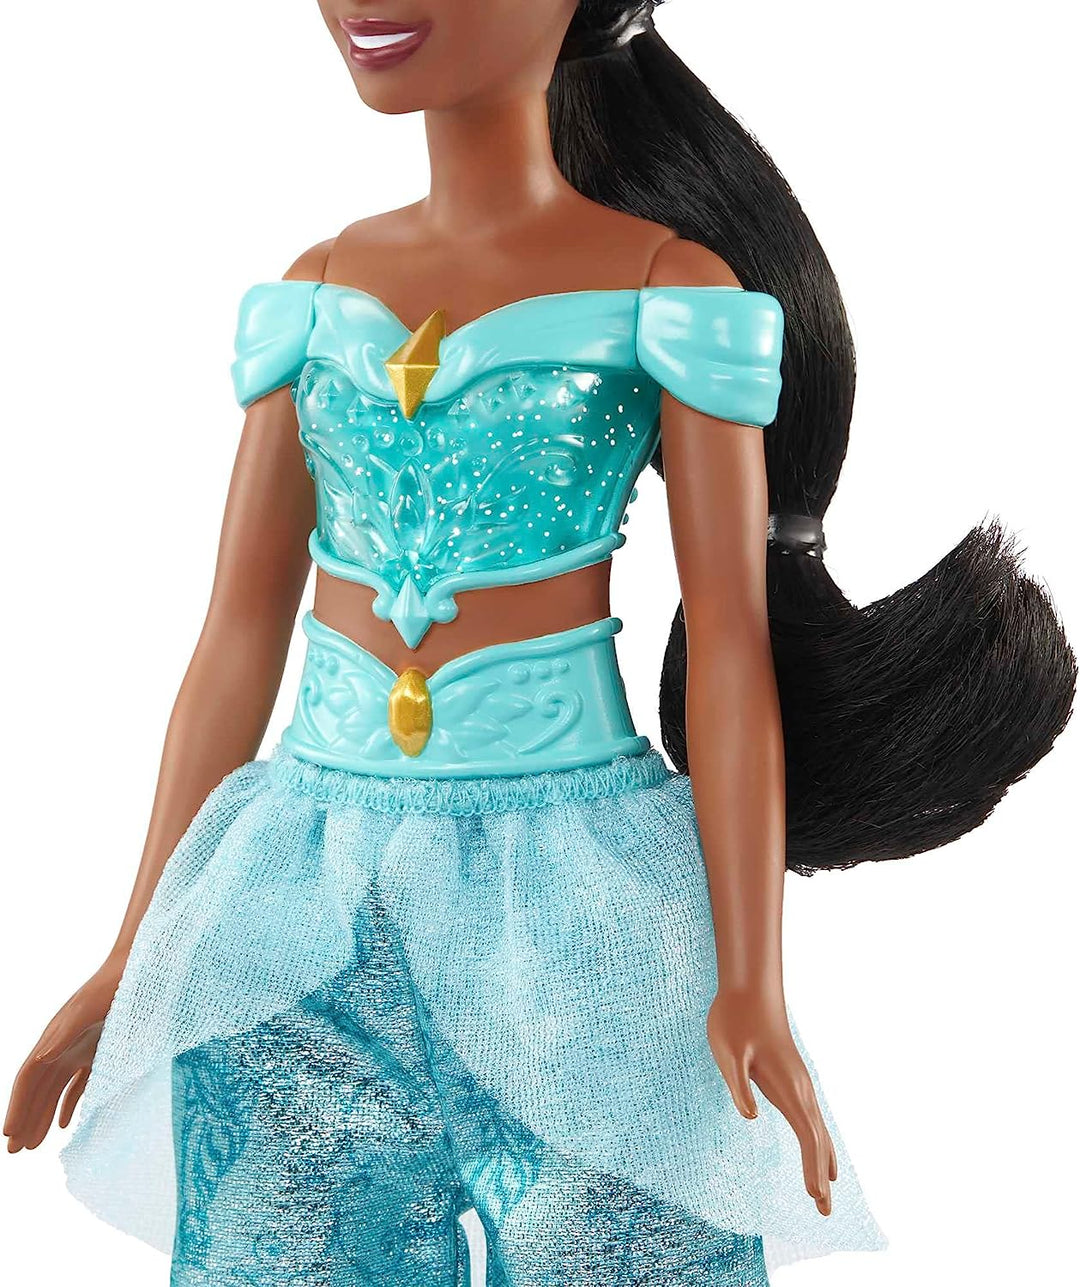 Disney Princess Toys, bewegliche Modepuppe Jasmine mit glitzernder Kleidung und A